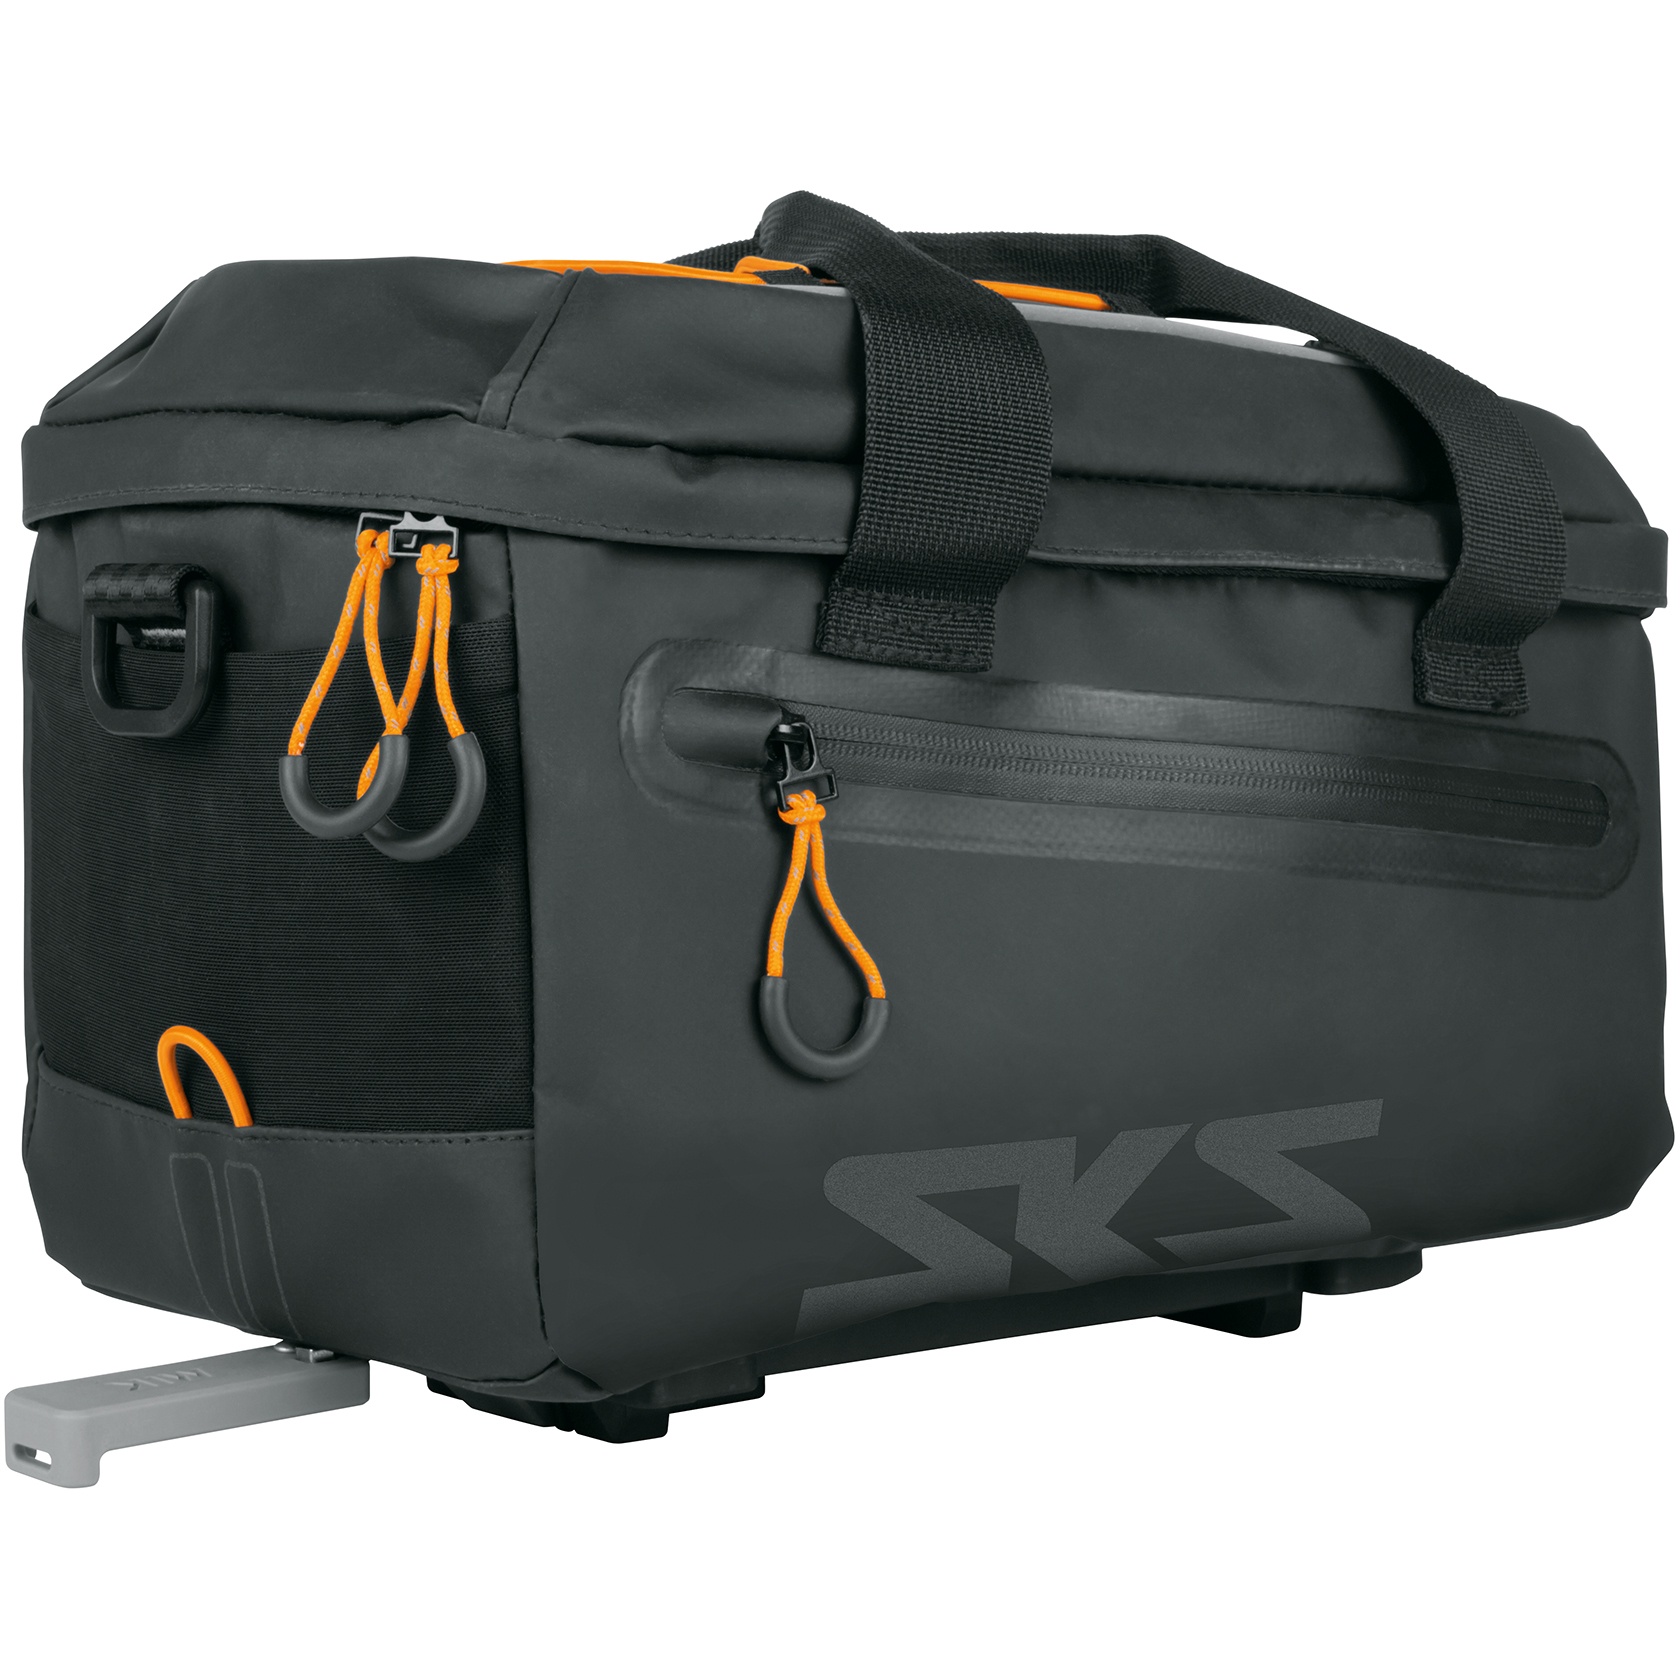 Produktbild von SKS Infinity Topbag - Gepäckträgertasche - schwarz